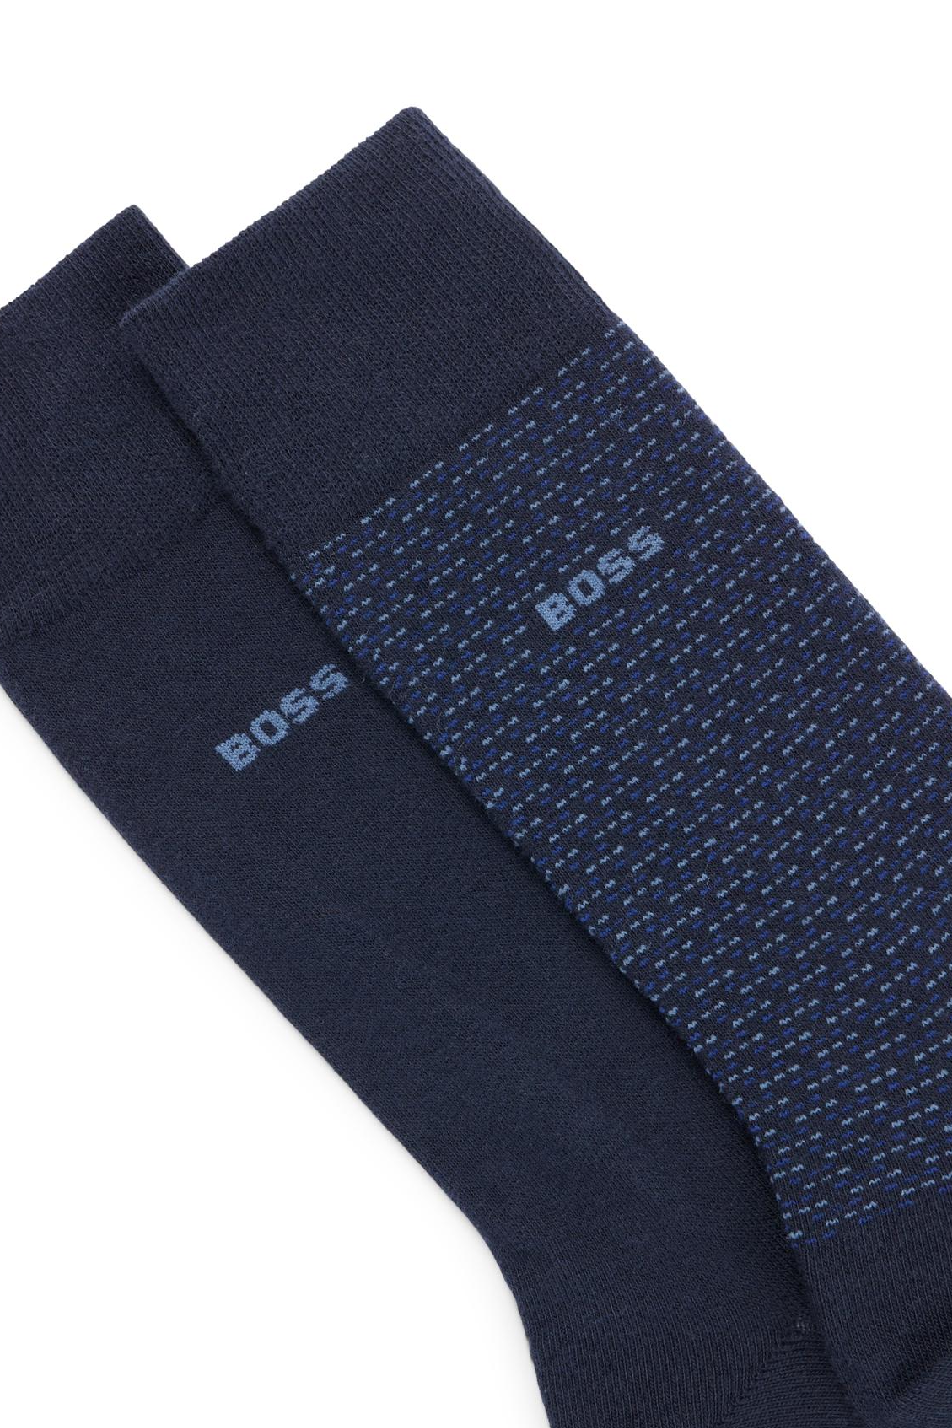 BOSS 2 Pack Men's Minipattern Sock